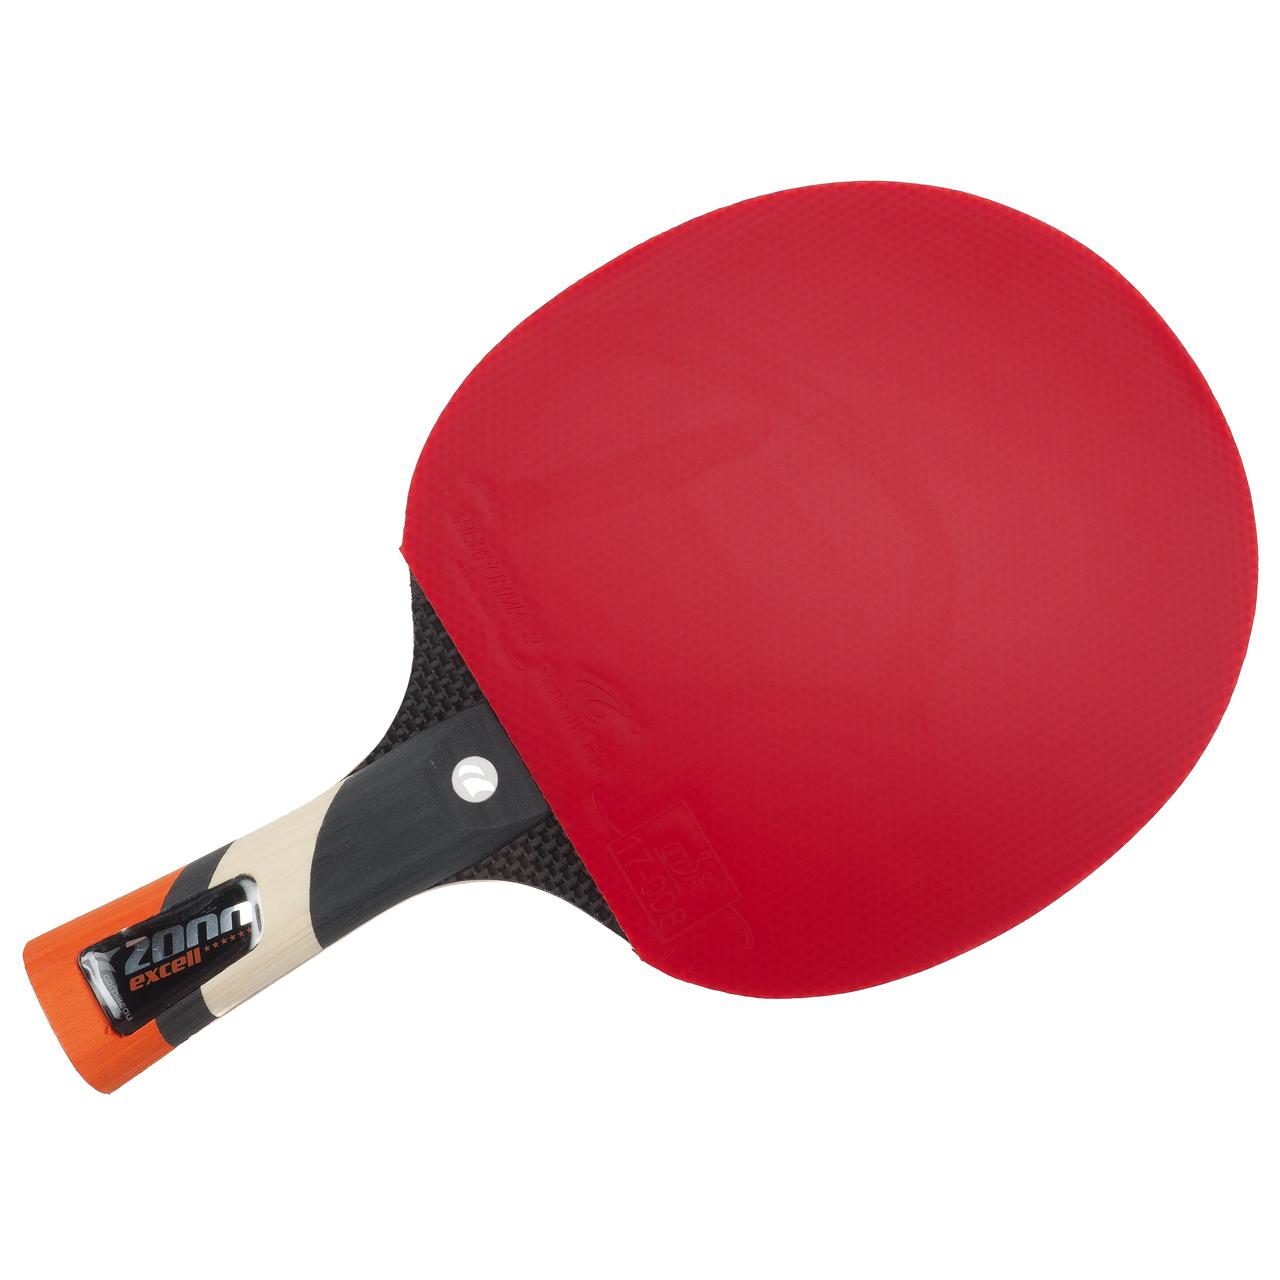 Raquette tennis de table Cornilleau Excell 2000 carbon Rouge 83118